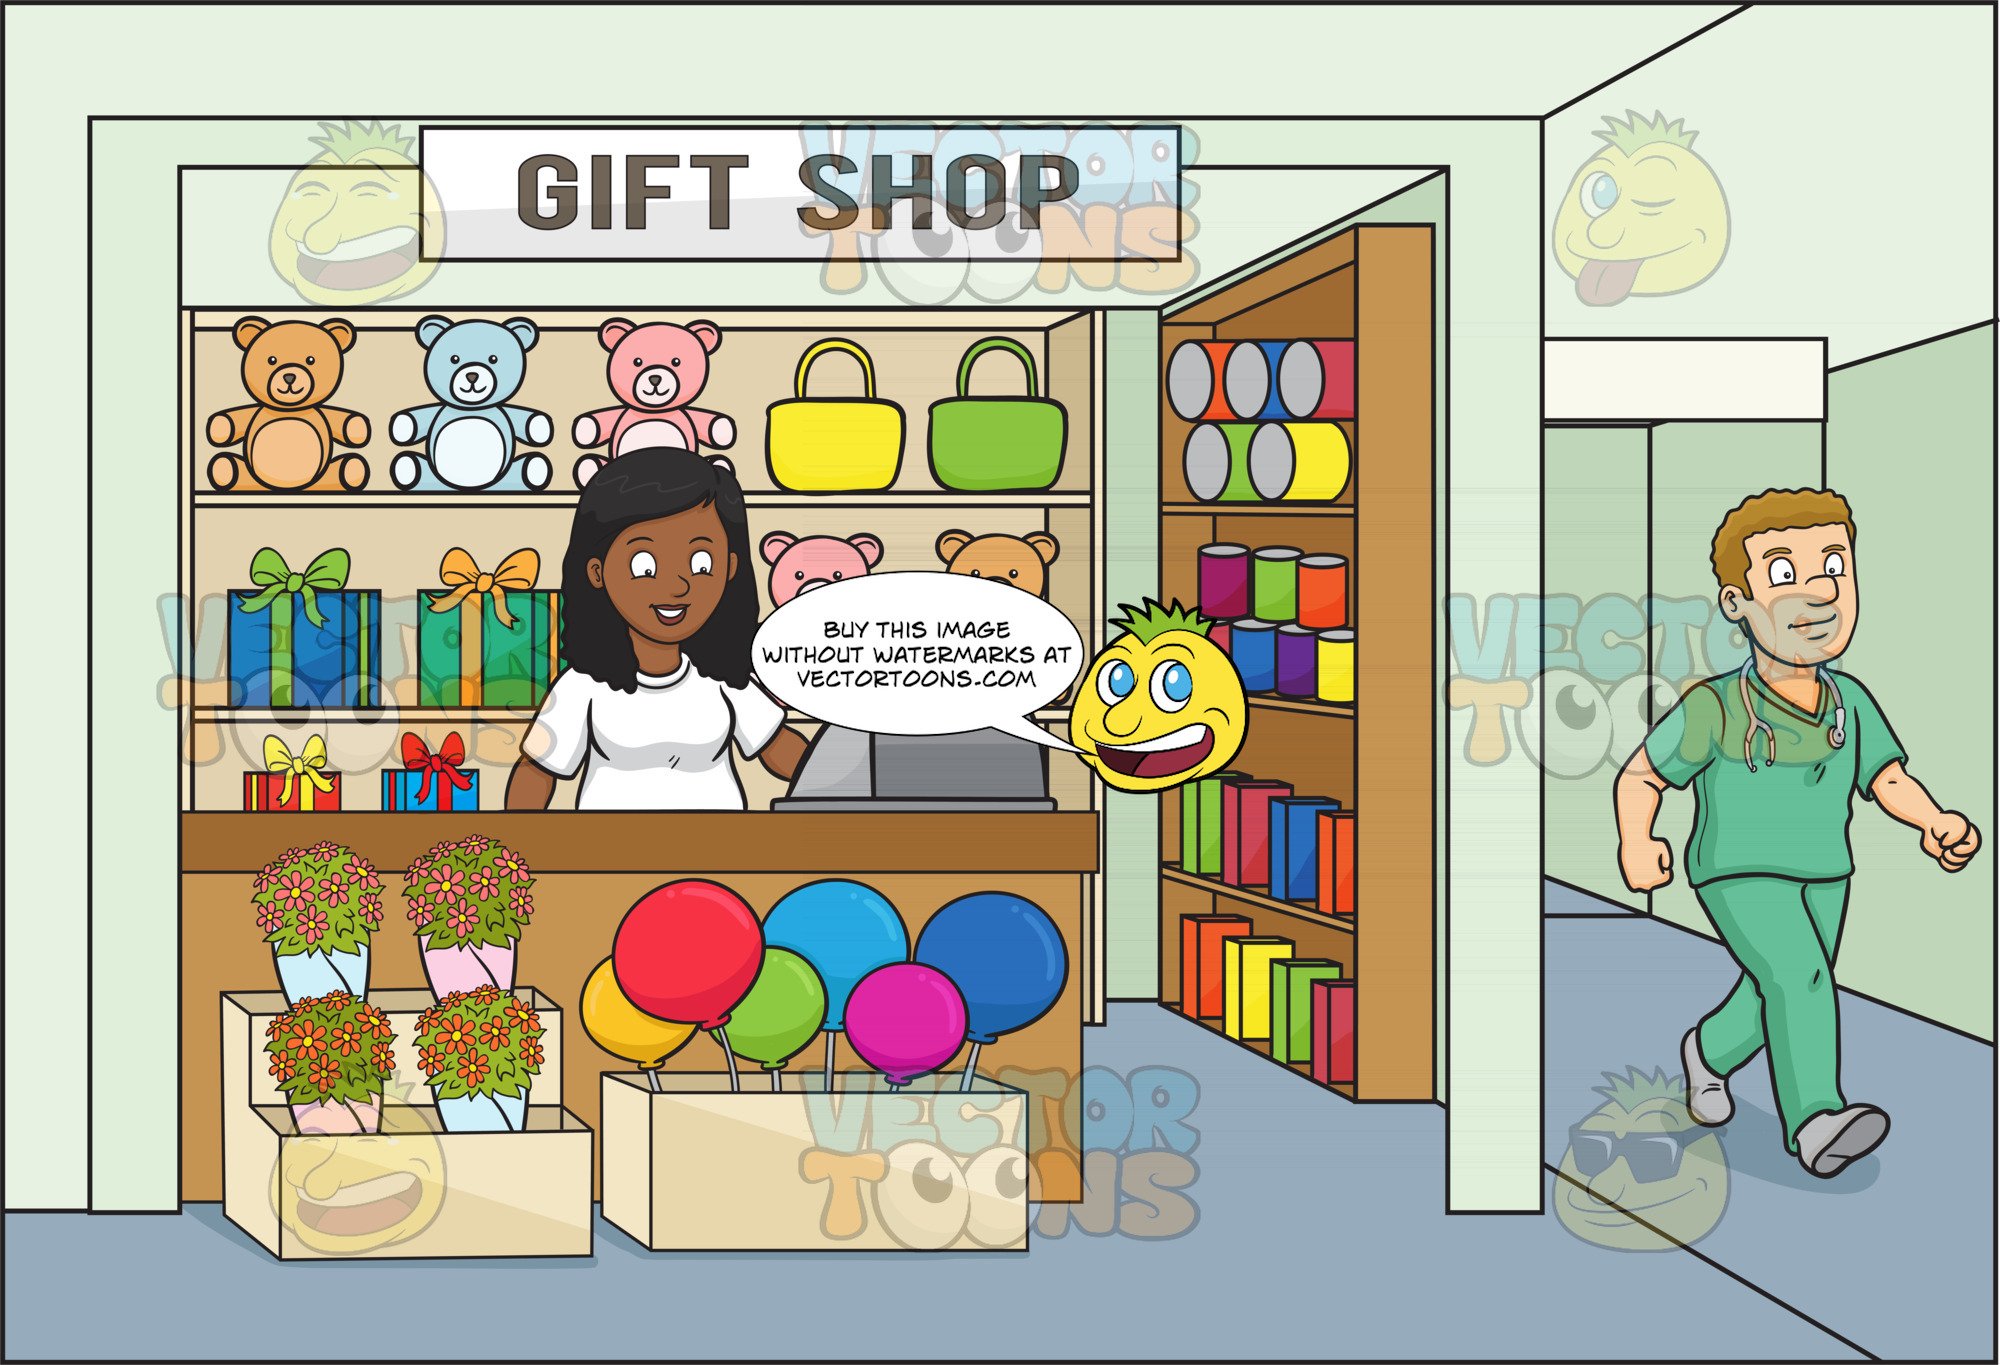 Now we to the shop. Магазин иллюстрация. Gift shop картинки. Shop иллюстрация. Gift shop картинка для детей.